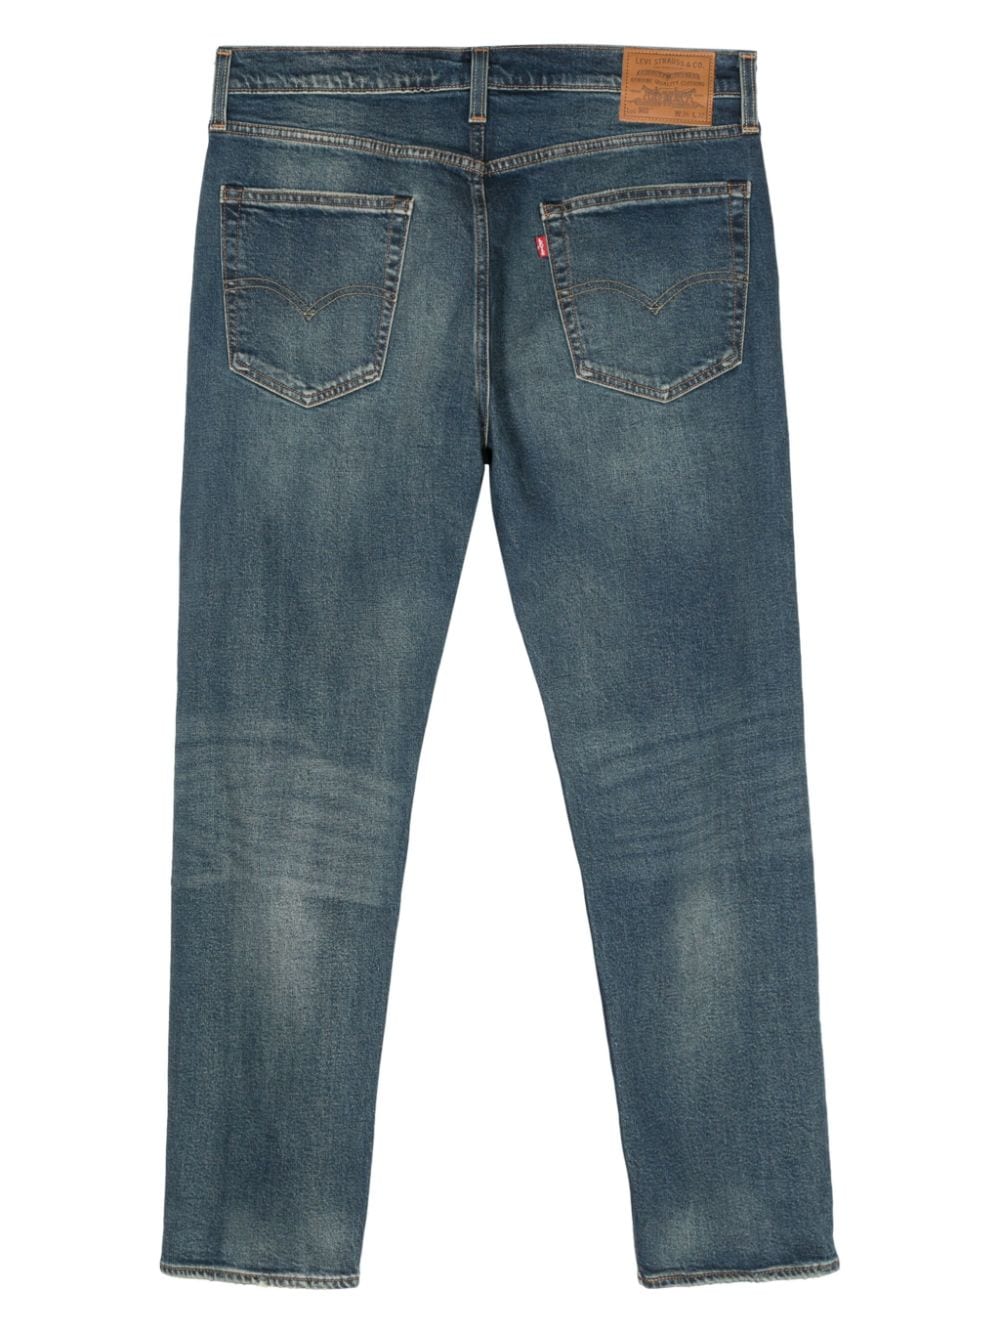 502 Taper jeans<BR/><BR/><BR/>